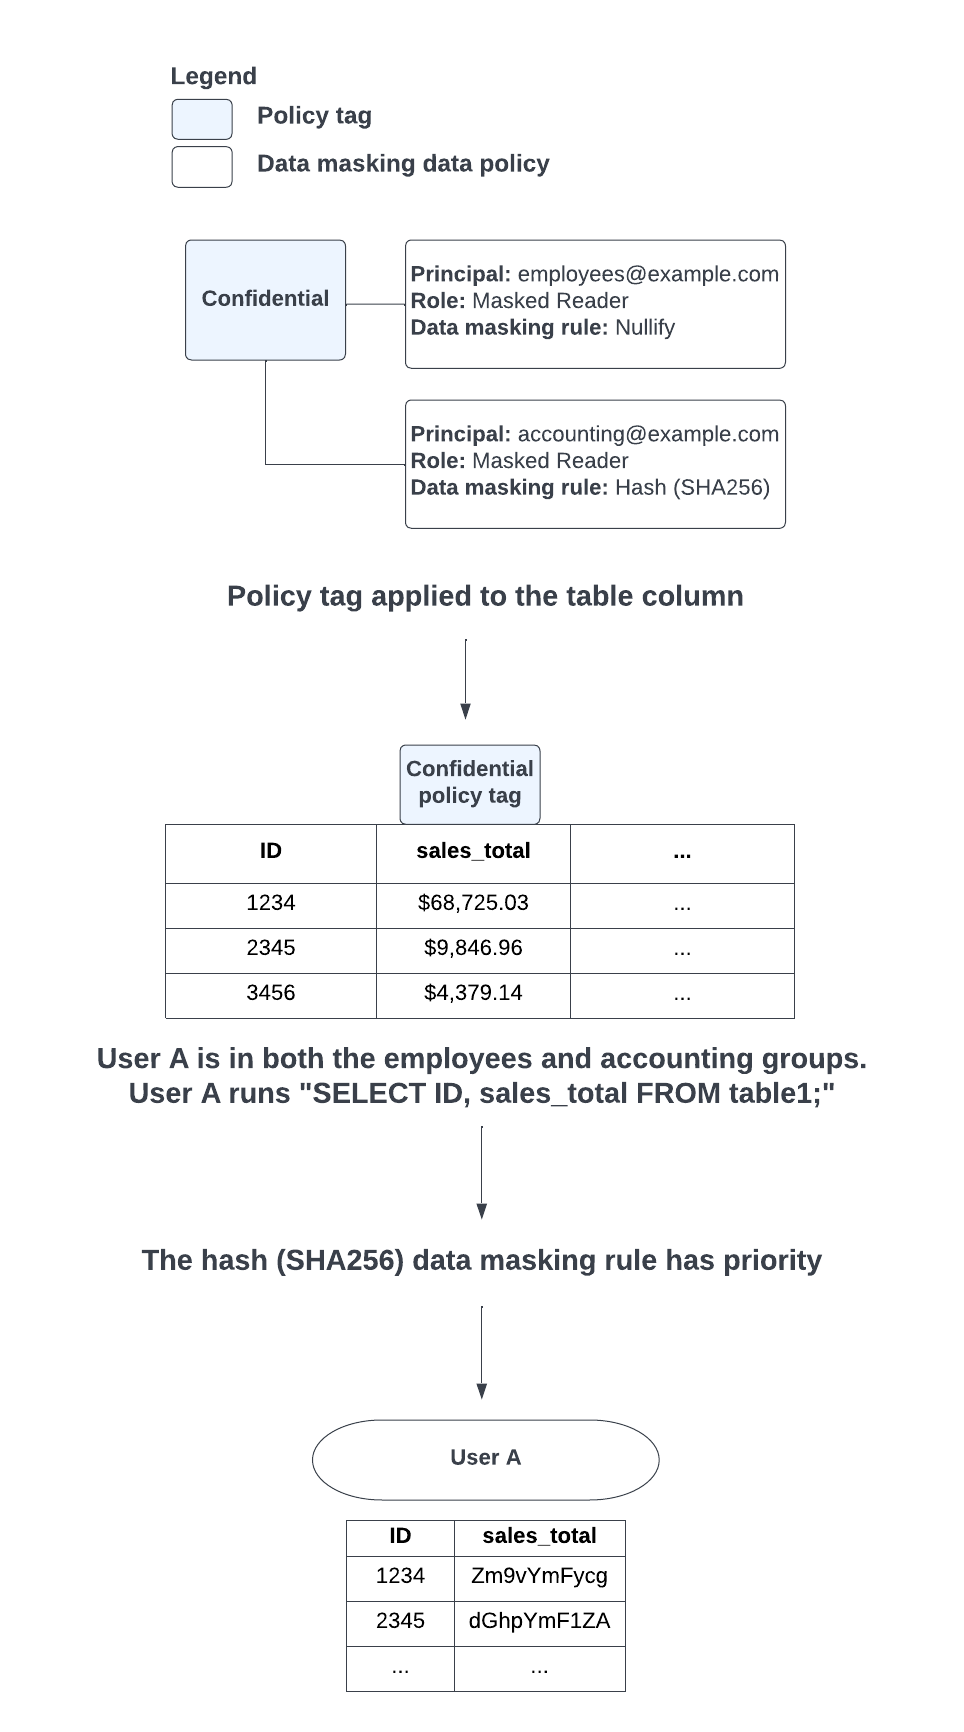 Quando si verifica un conflitto tra l&#39;applicazione delle regole di mascheramento dei dati nullify e dell&#39;hash (SHA-256) a causa dei gruppi di cui l&#39;utente si trova, viene data la priorità alla regola di mascheramento dei dati hash (SHA-256).